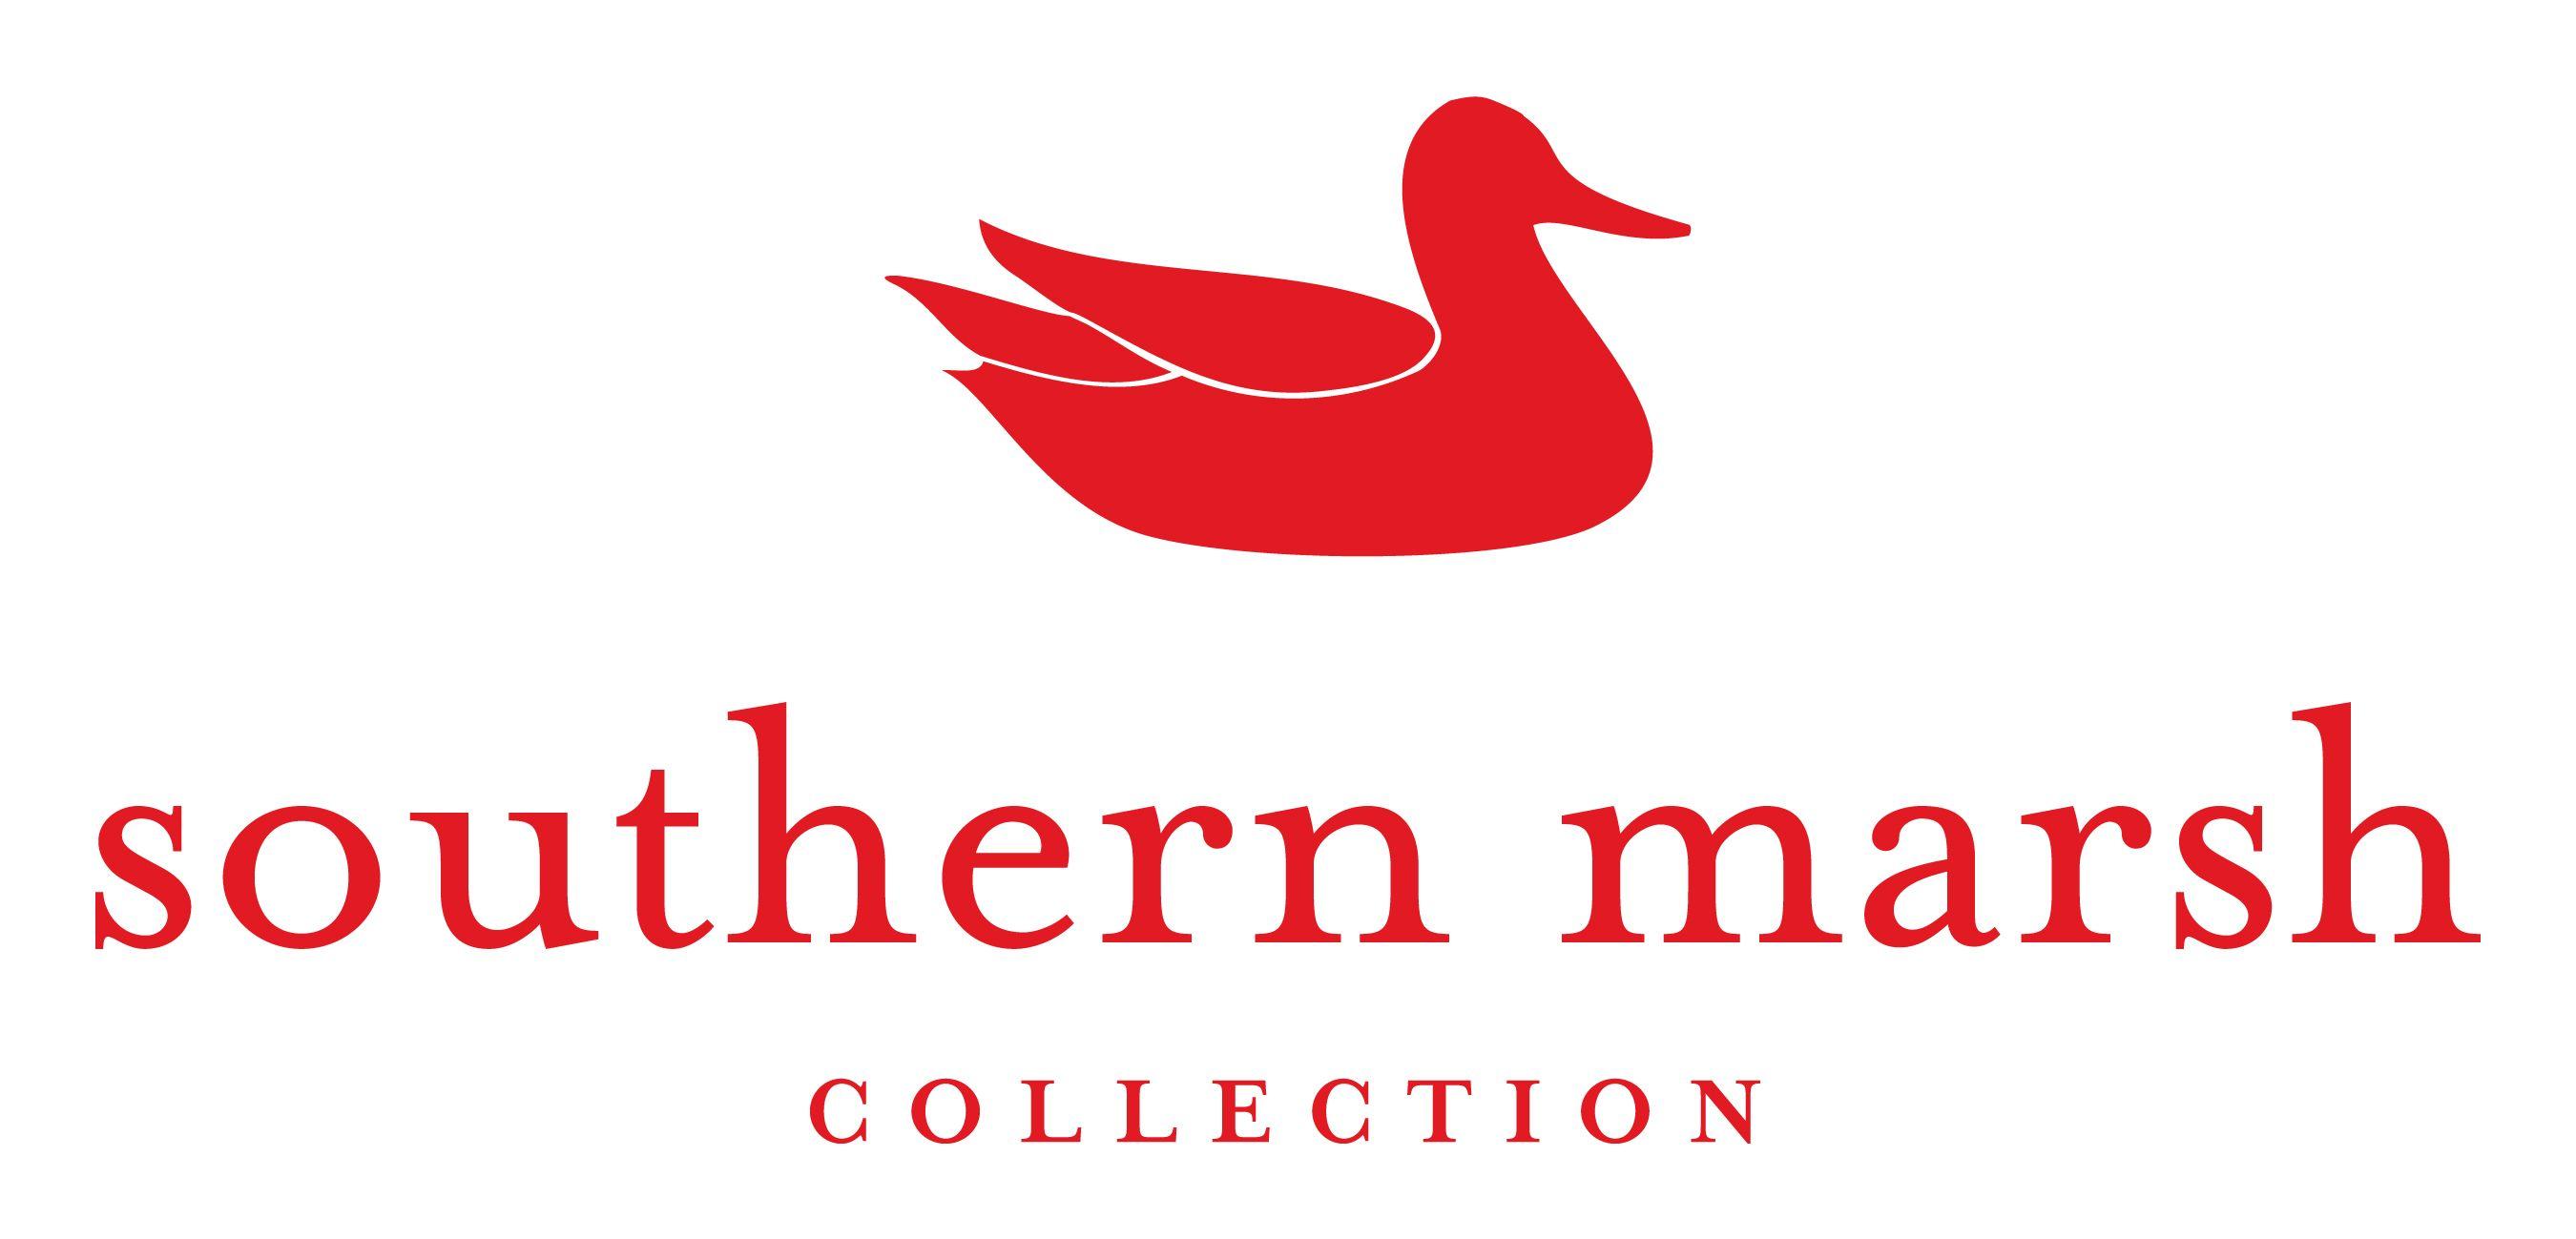 Southern Marsh Logo - southern marsh. Southern marsh, Logos